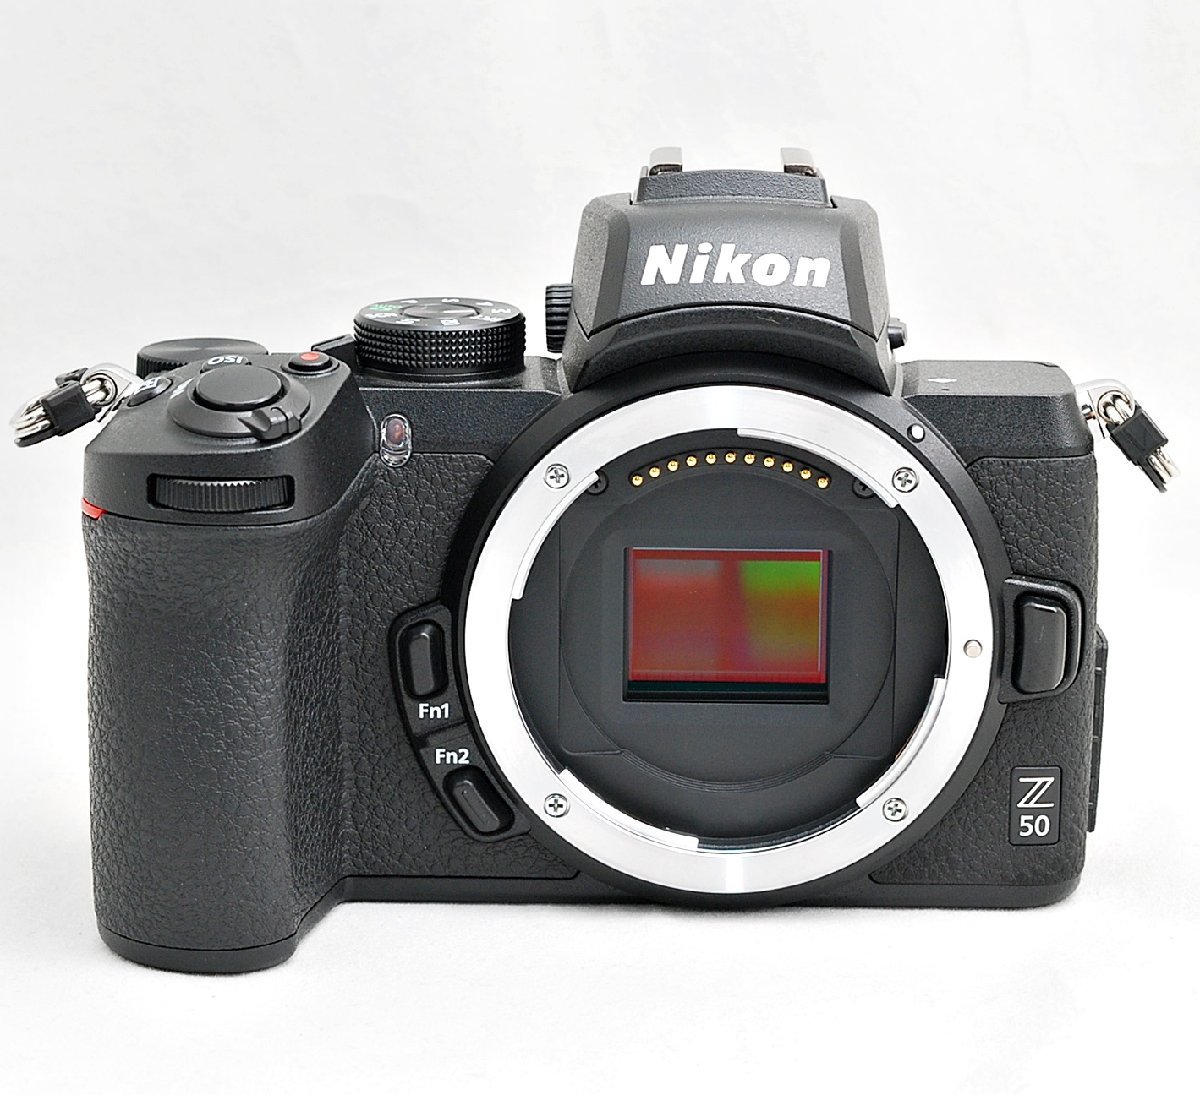 新作通販 最大64%OFFクーポン ニコン Nikon Z50 ボディ ショット数9枚 未使用ストラップ付き ミラーレス カメラ 中古 mojpit.pl mojpit.pl